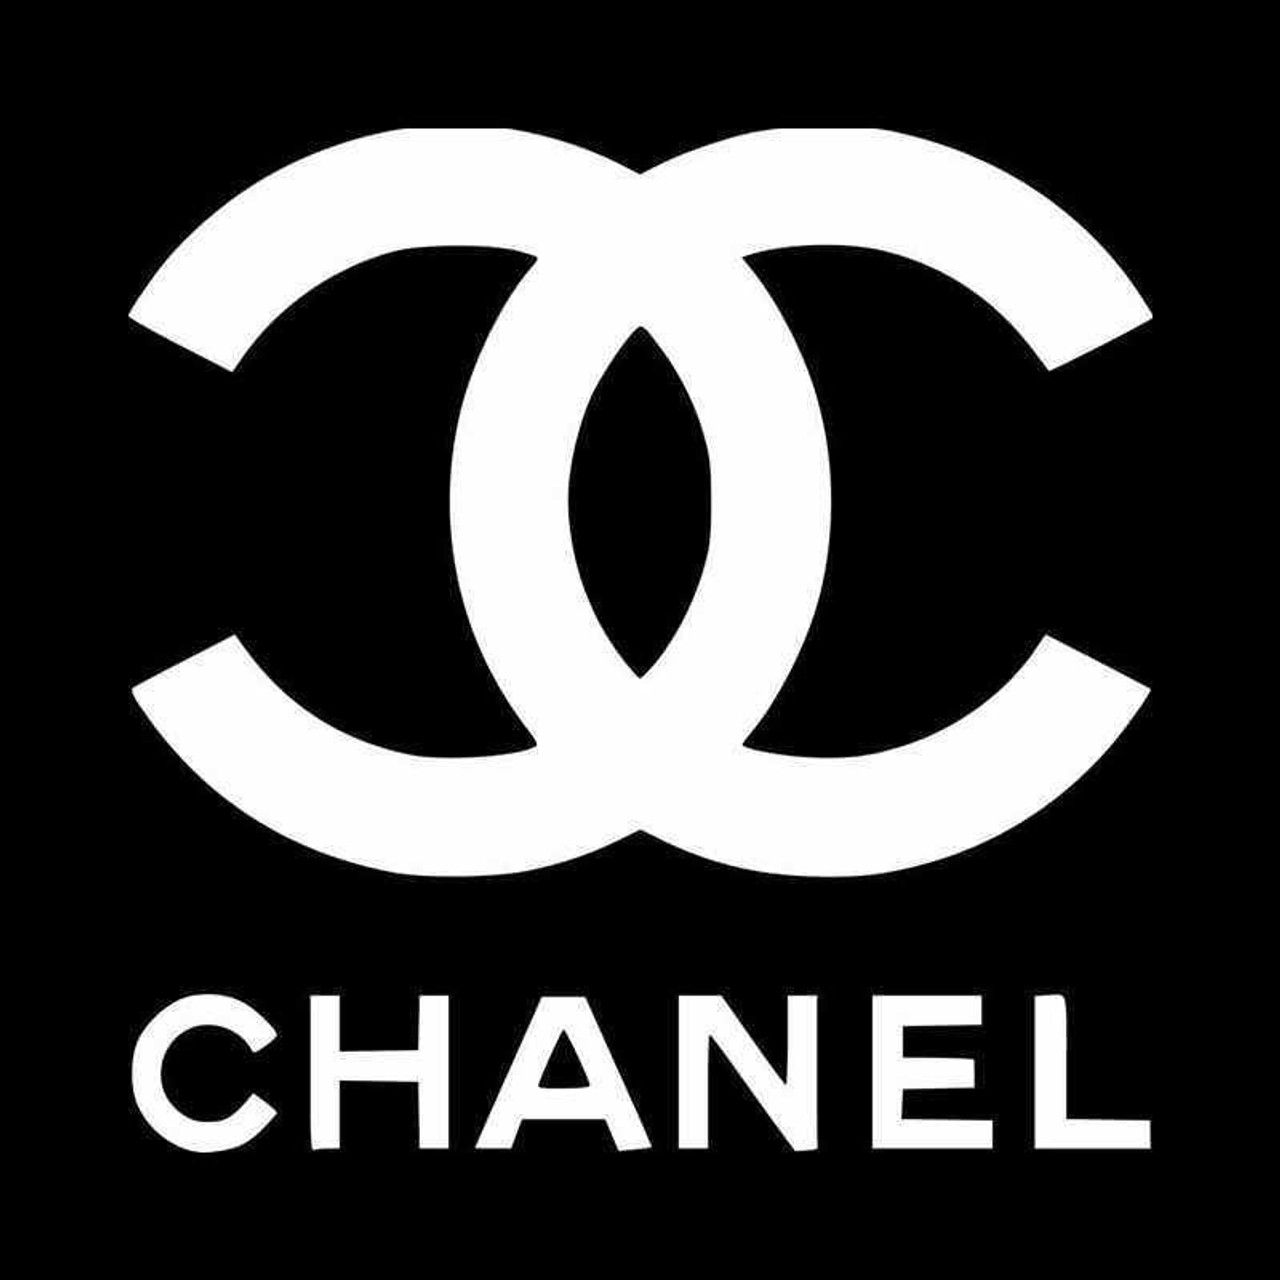 Chanel Vinyl Decal Sticker